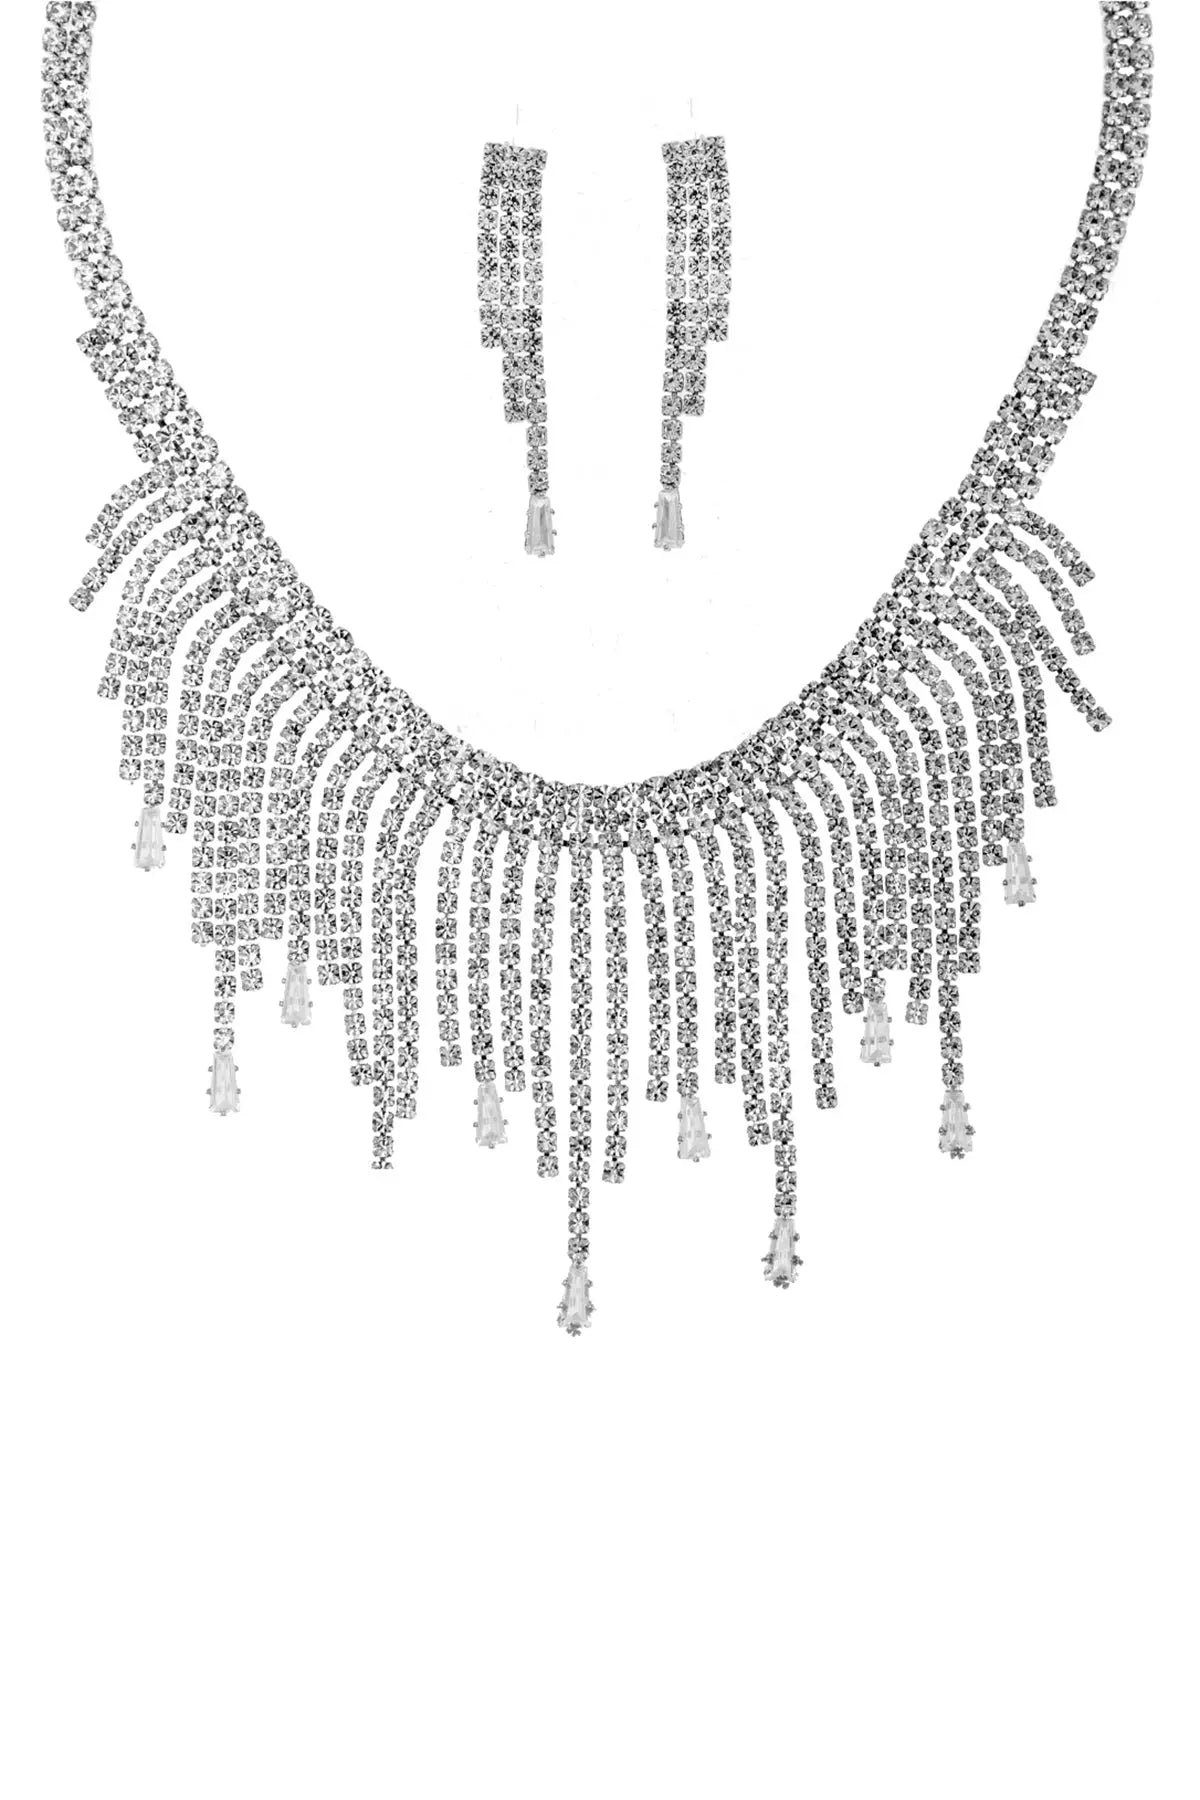 Rhinestone Crystal Baguette Fringe Necklace And Earring Set Sunny EvE Fashion